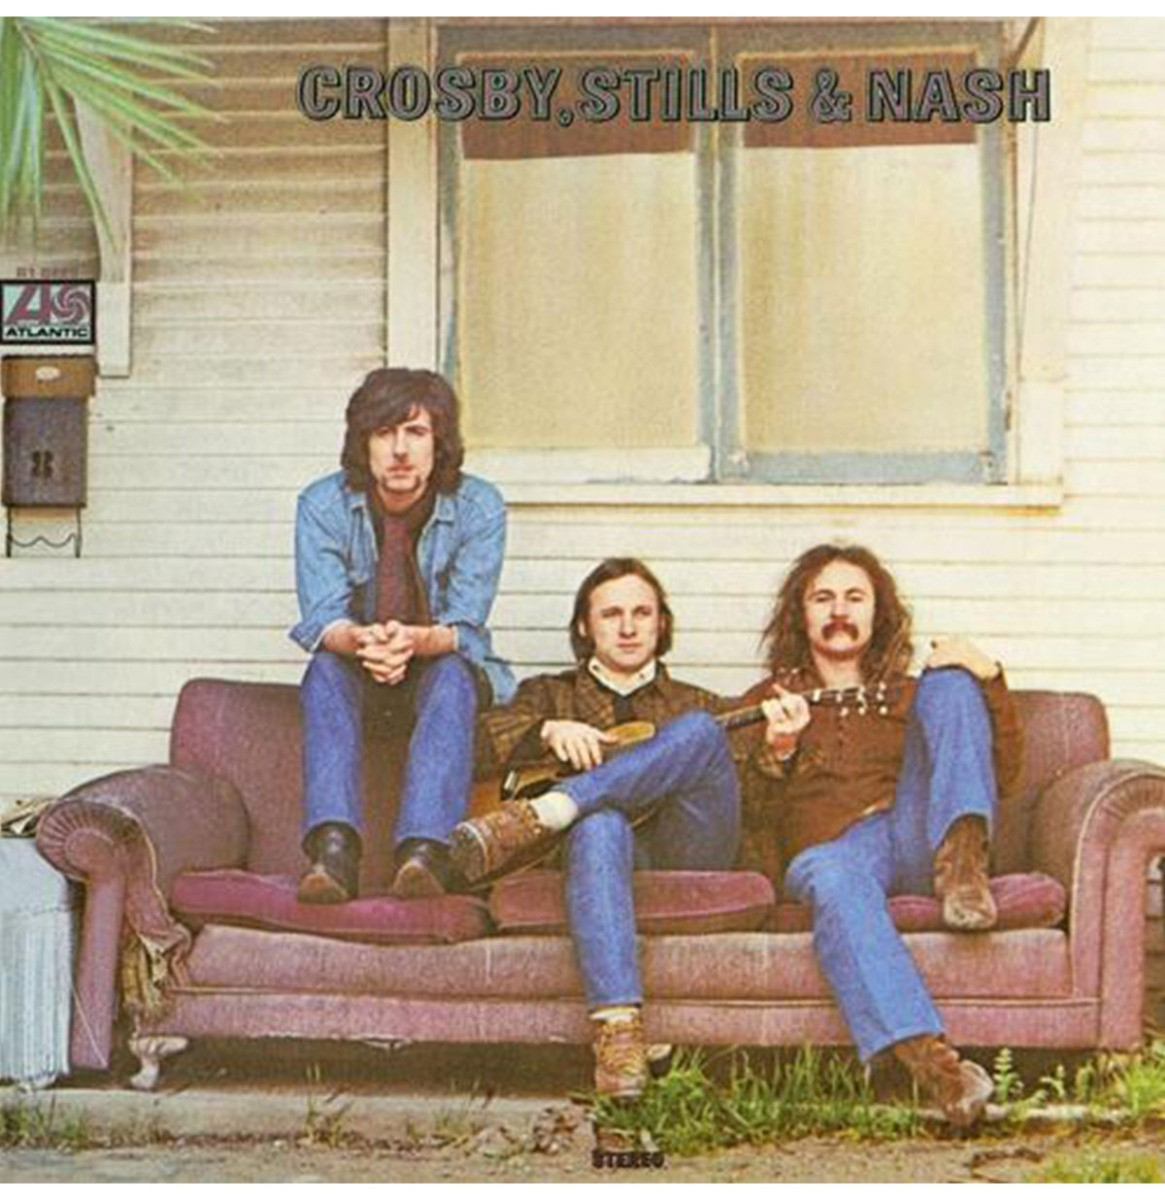 Crosby, Stills & Nash - Crosby, Stills & Nash LP